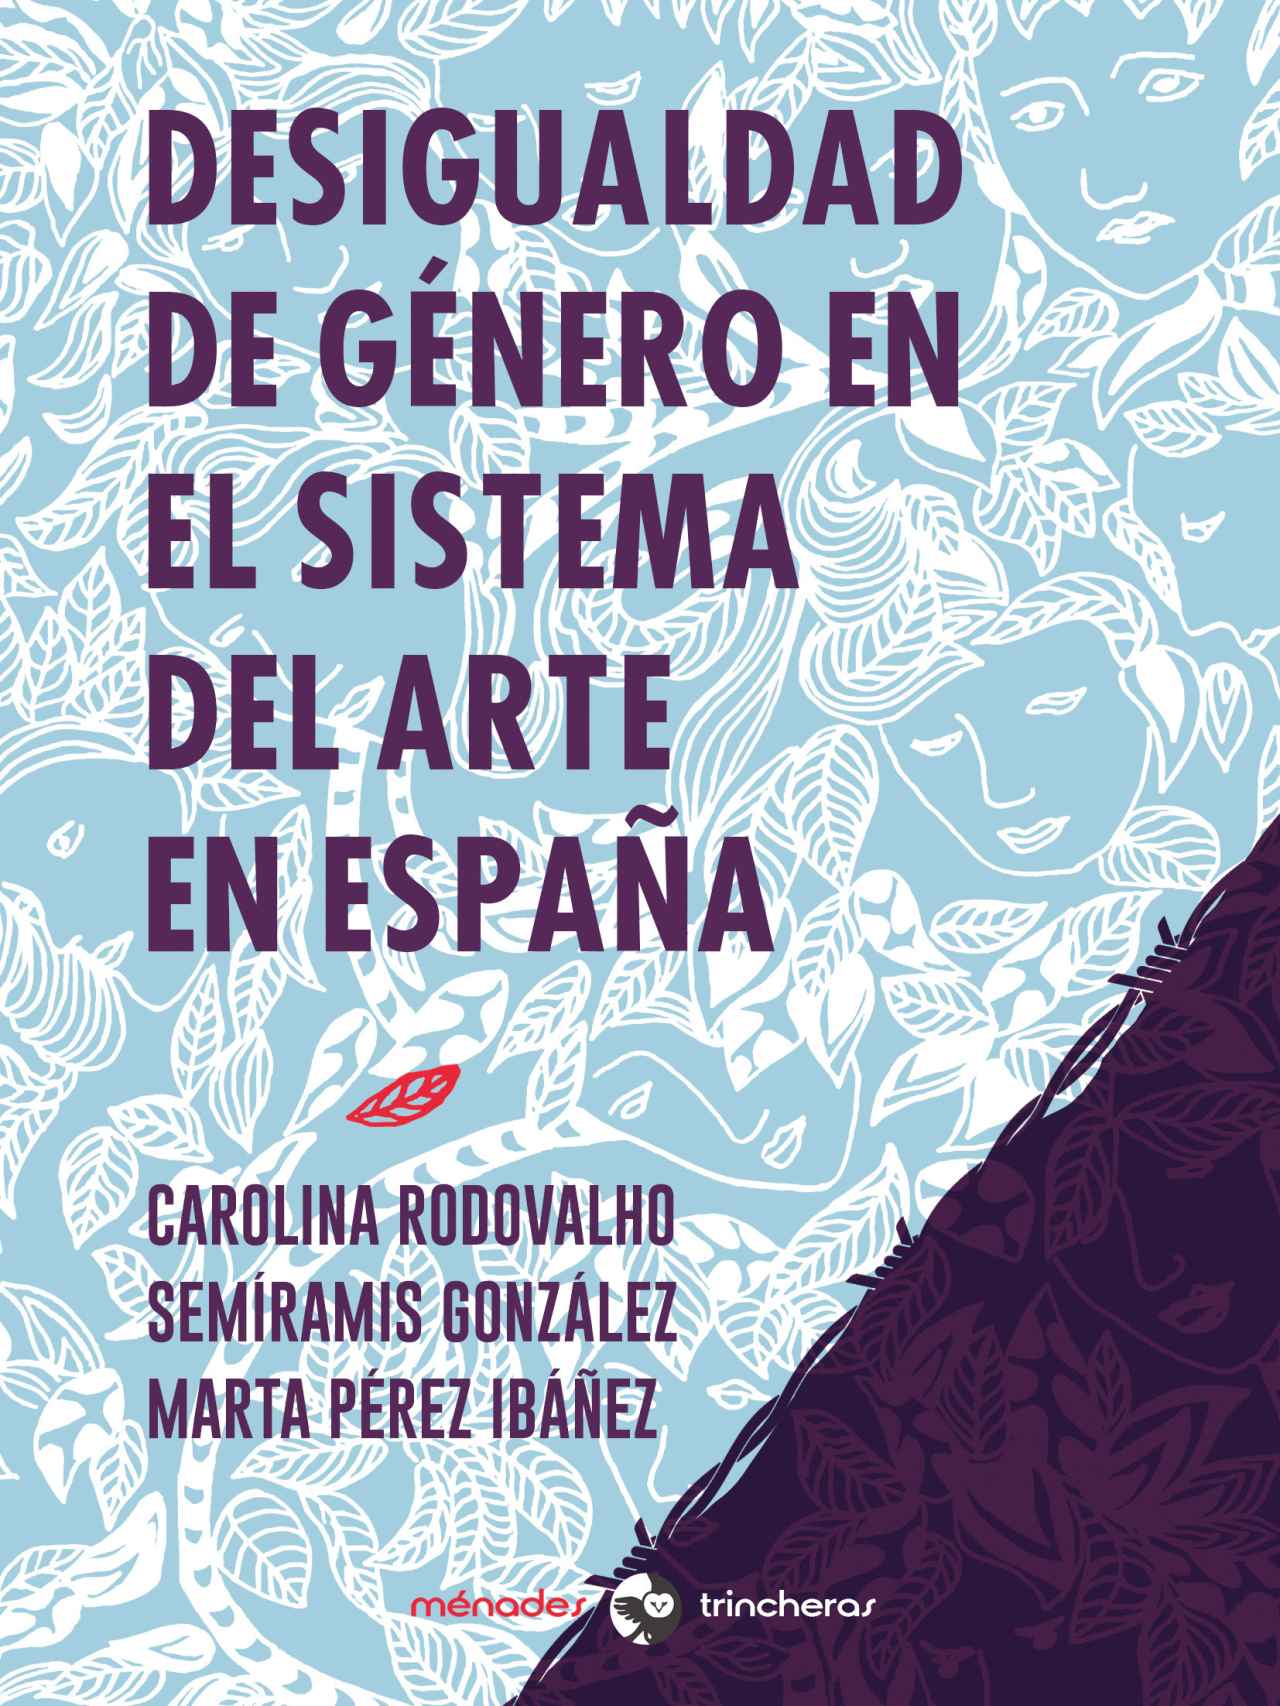 El libro hace una radiografía del sector artístico español.